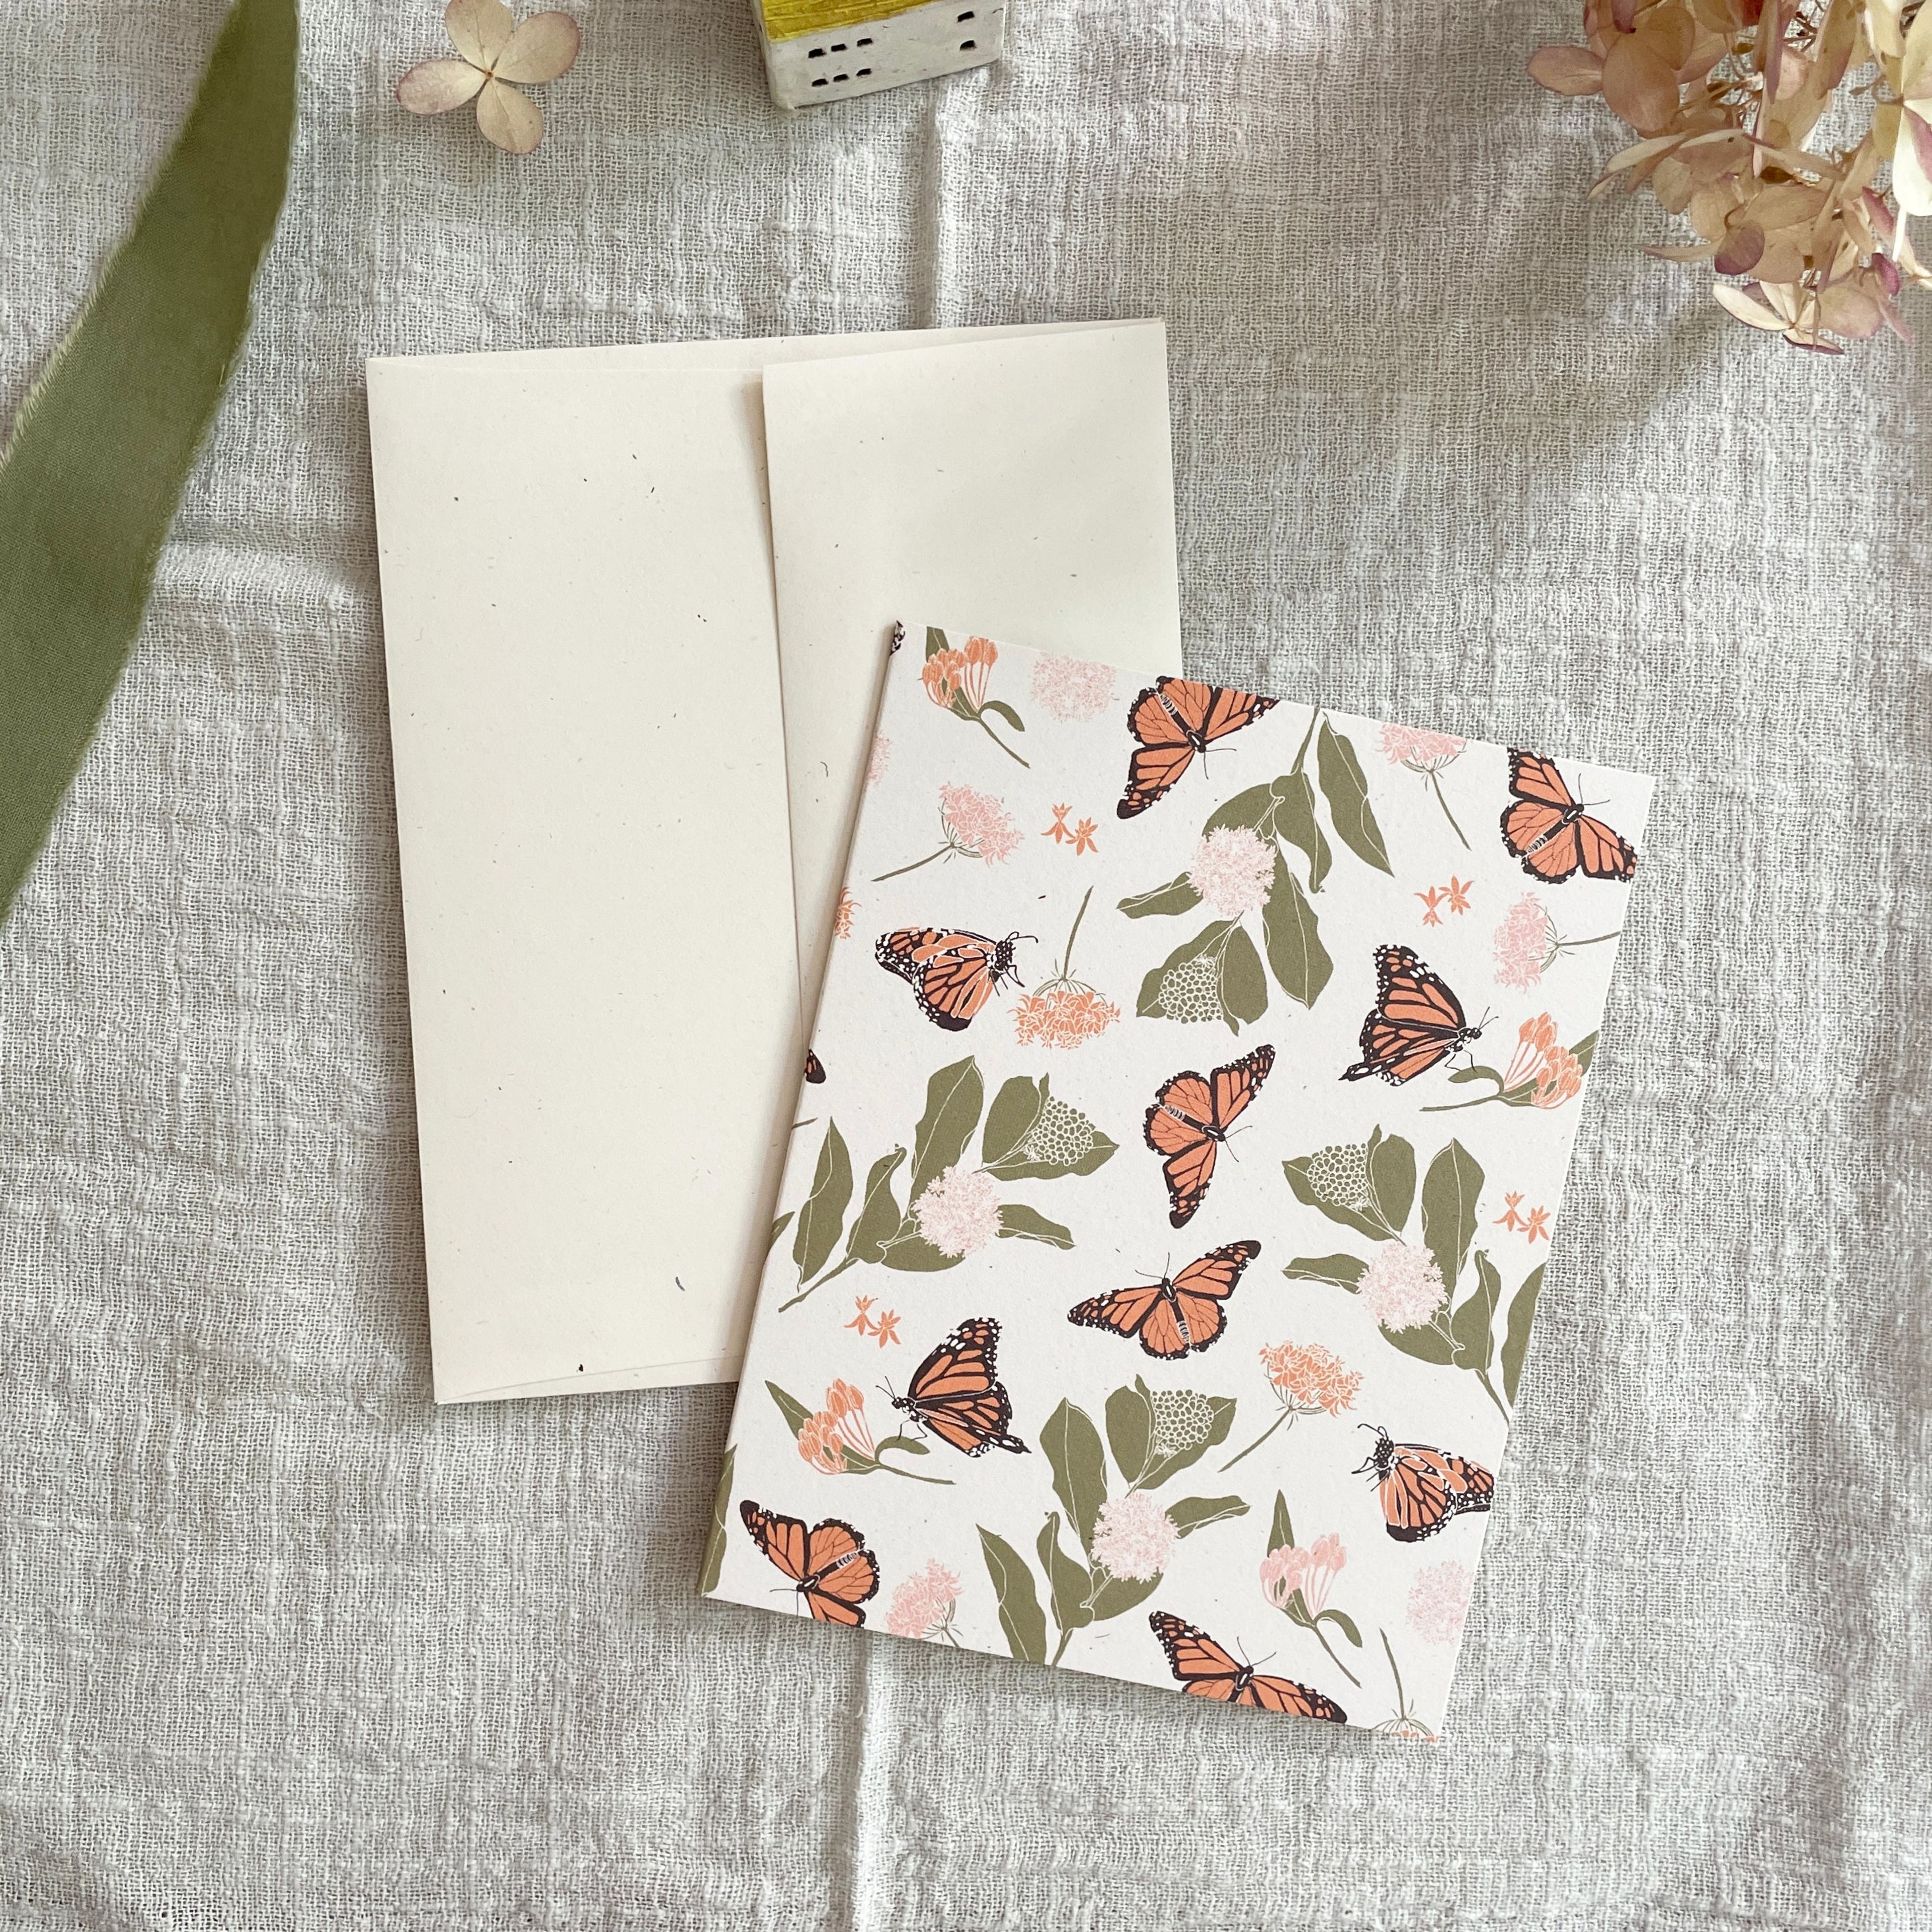 June & December - Monarchs & Milkweeds Card